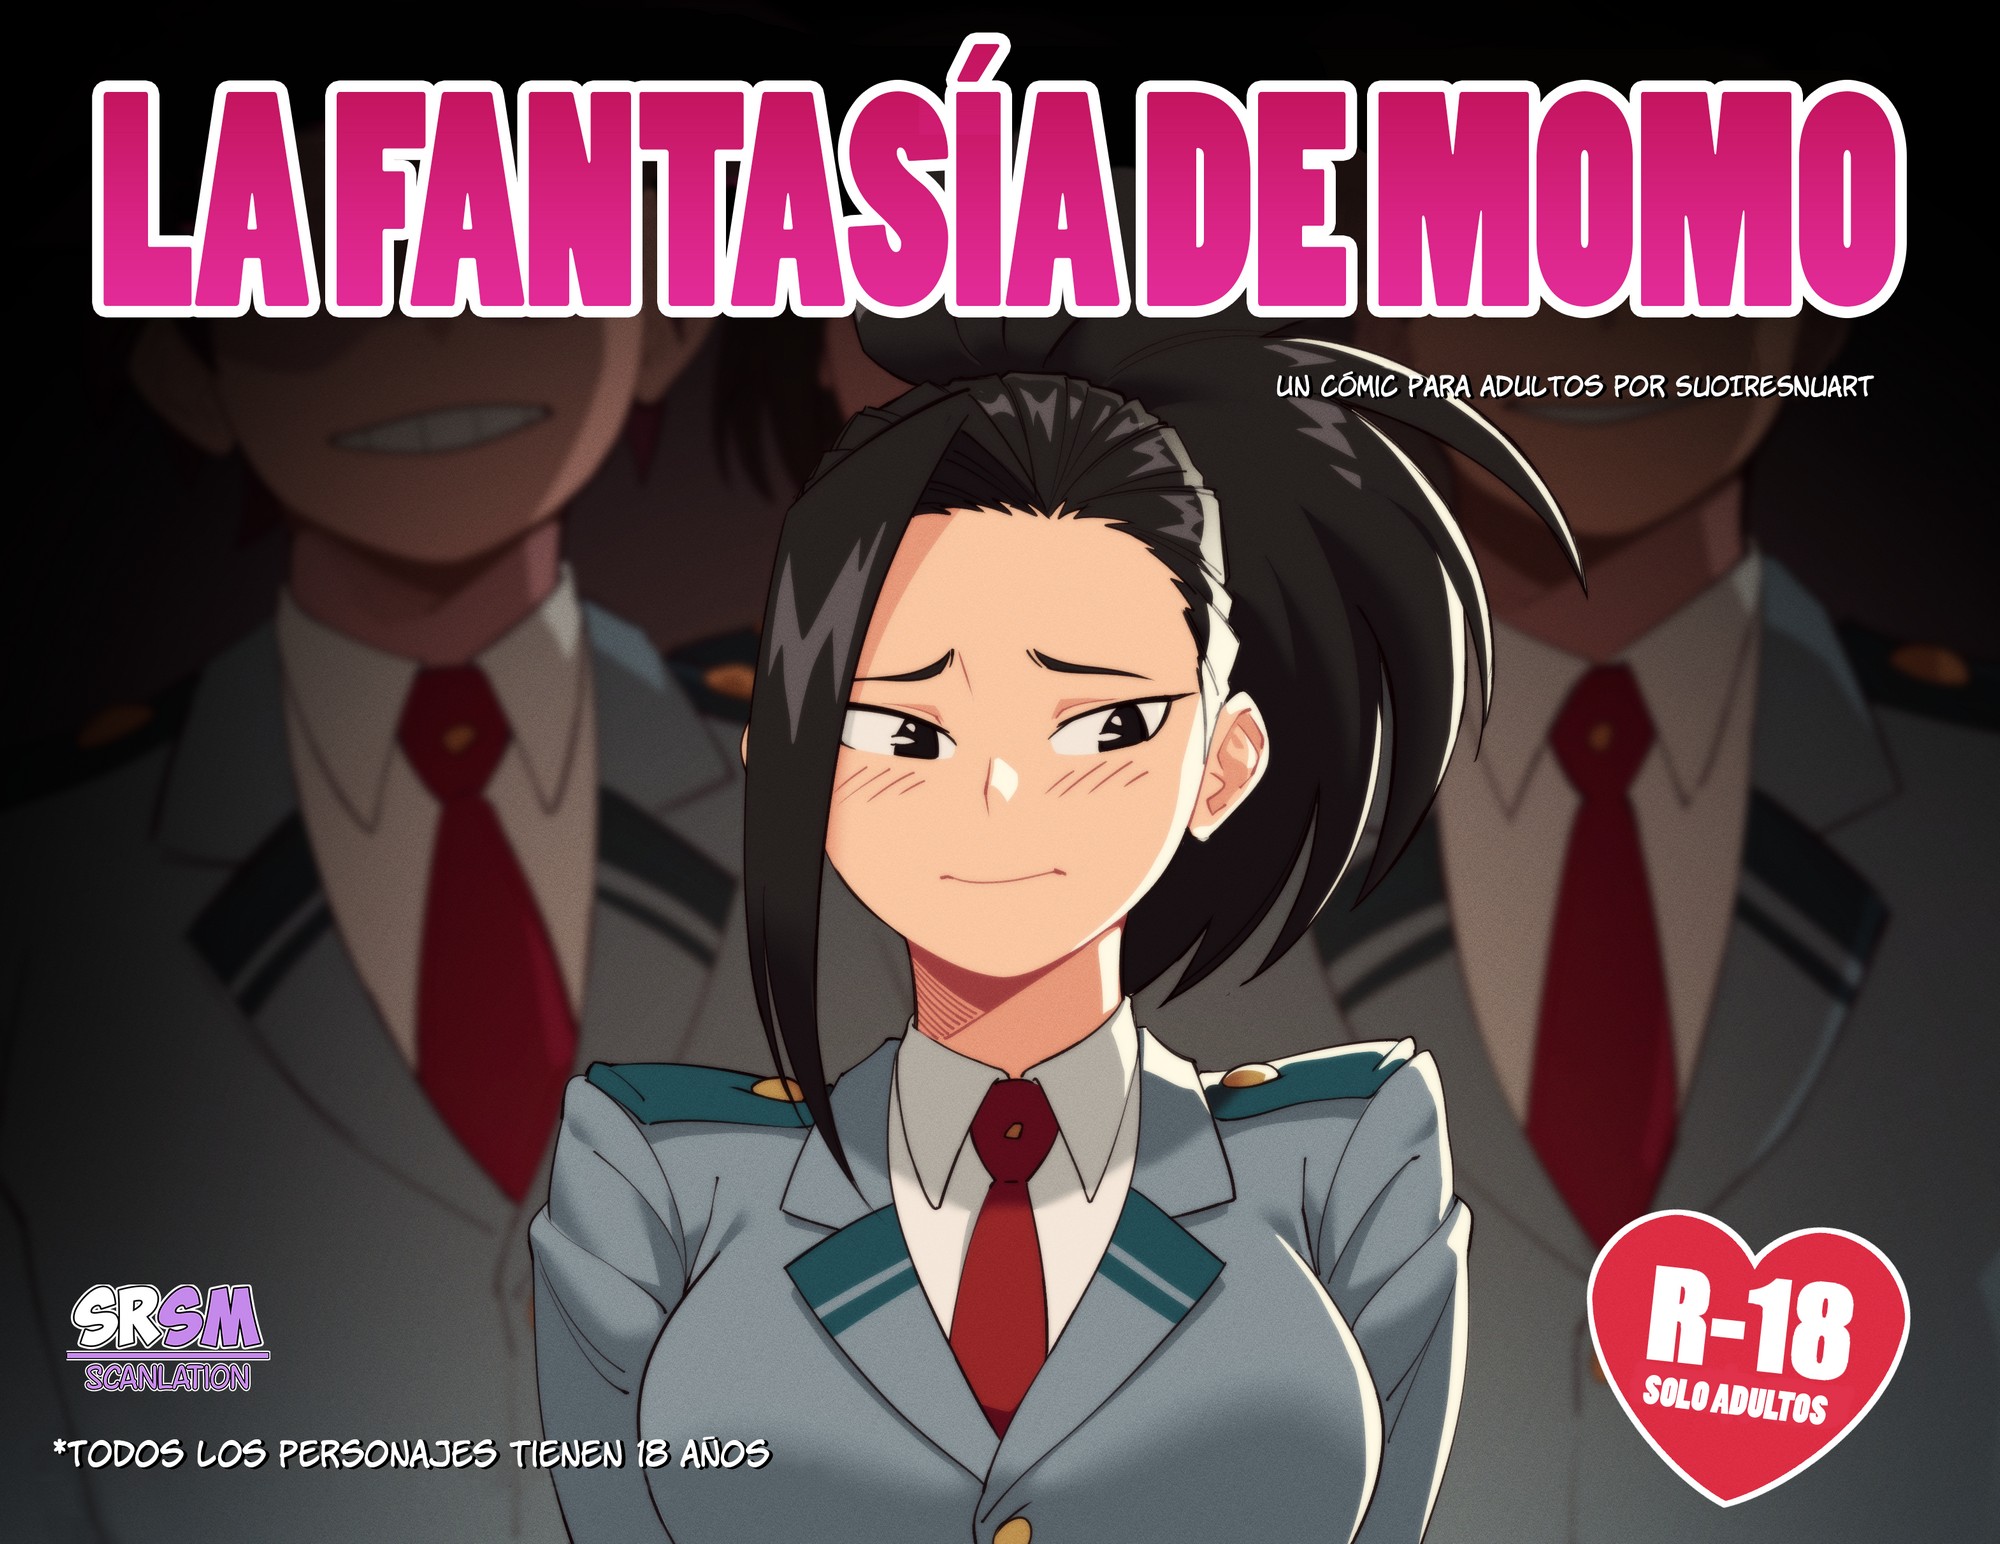 La Fantasia de Momo – suioresnuart - f486631df265976fac1f2c2cc1672685